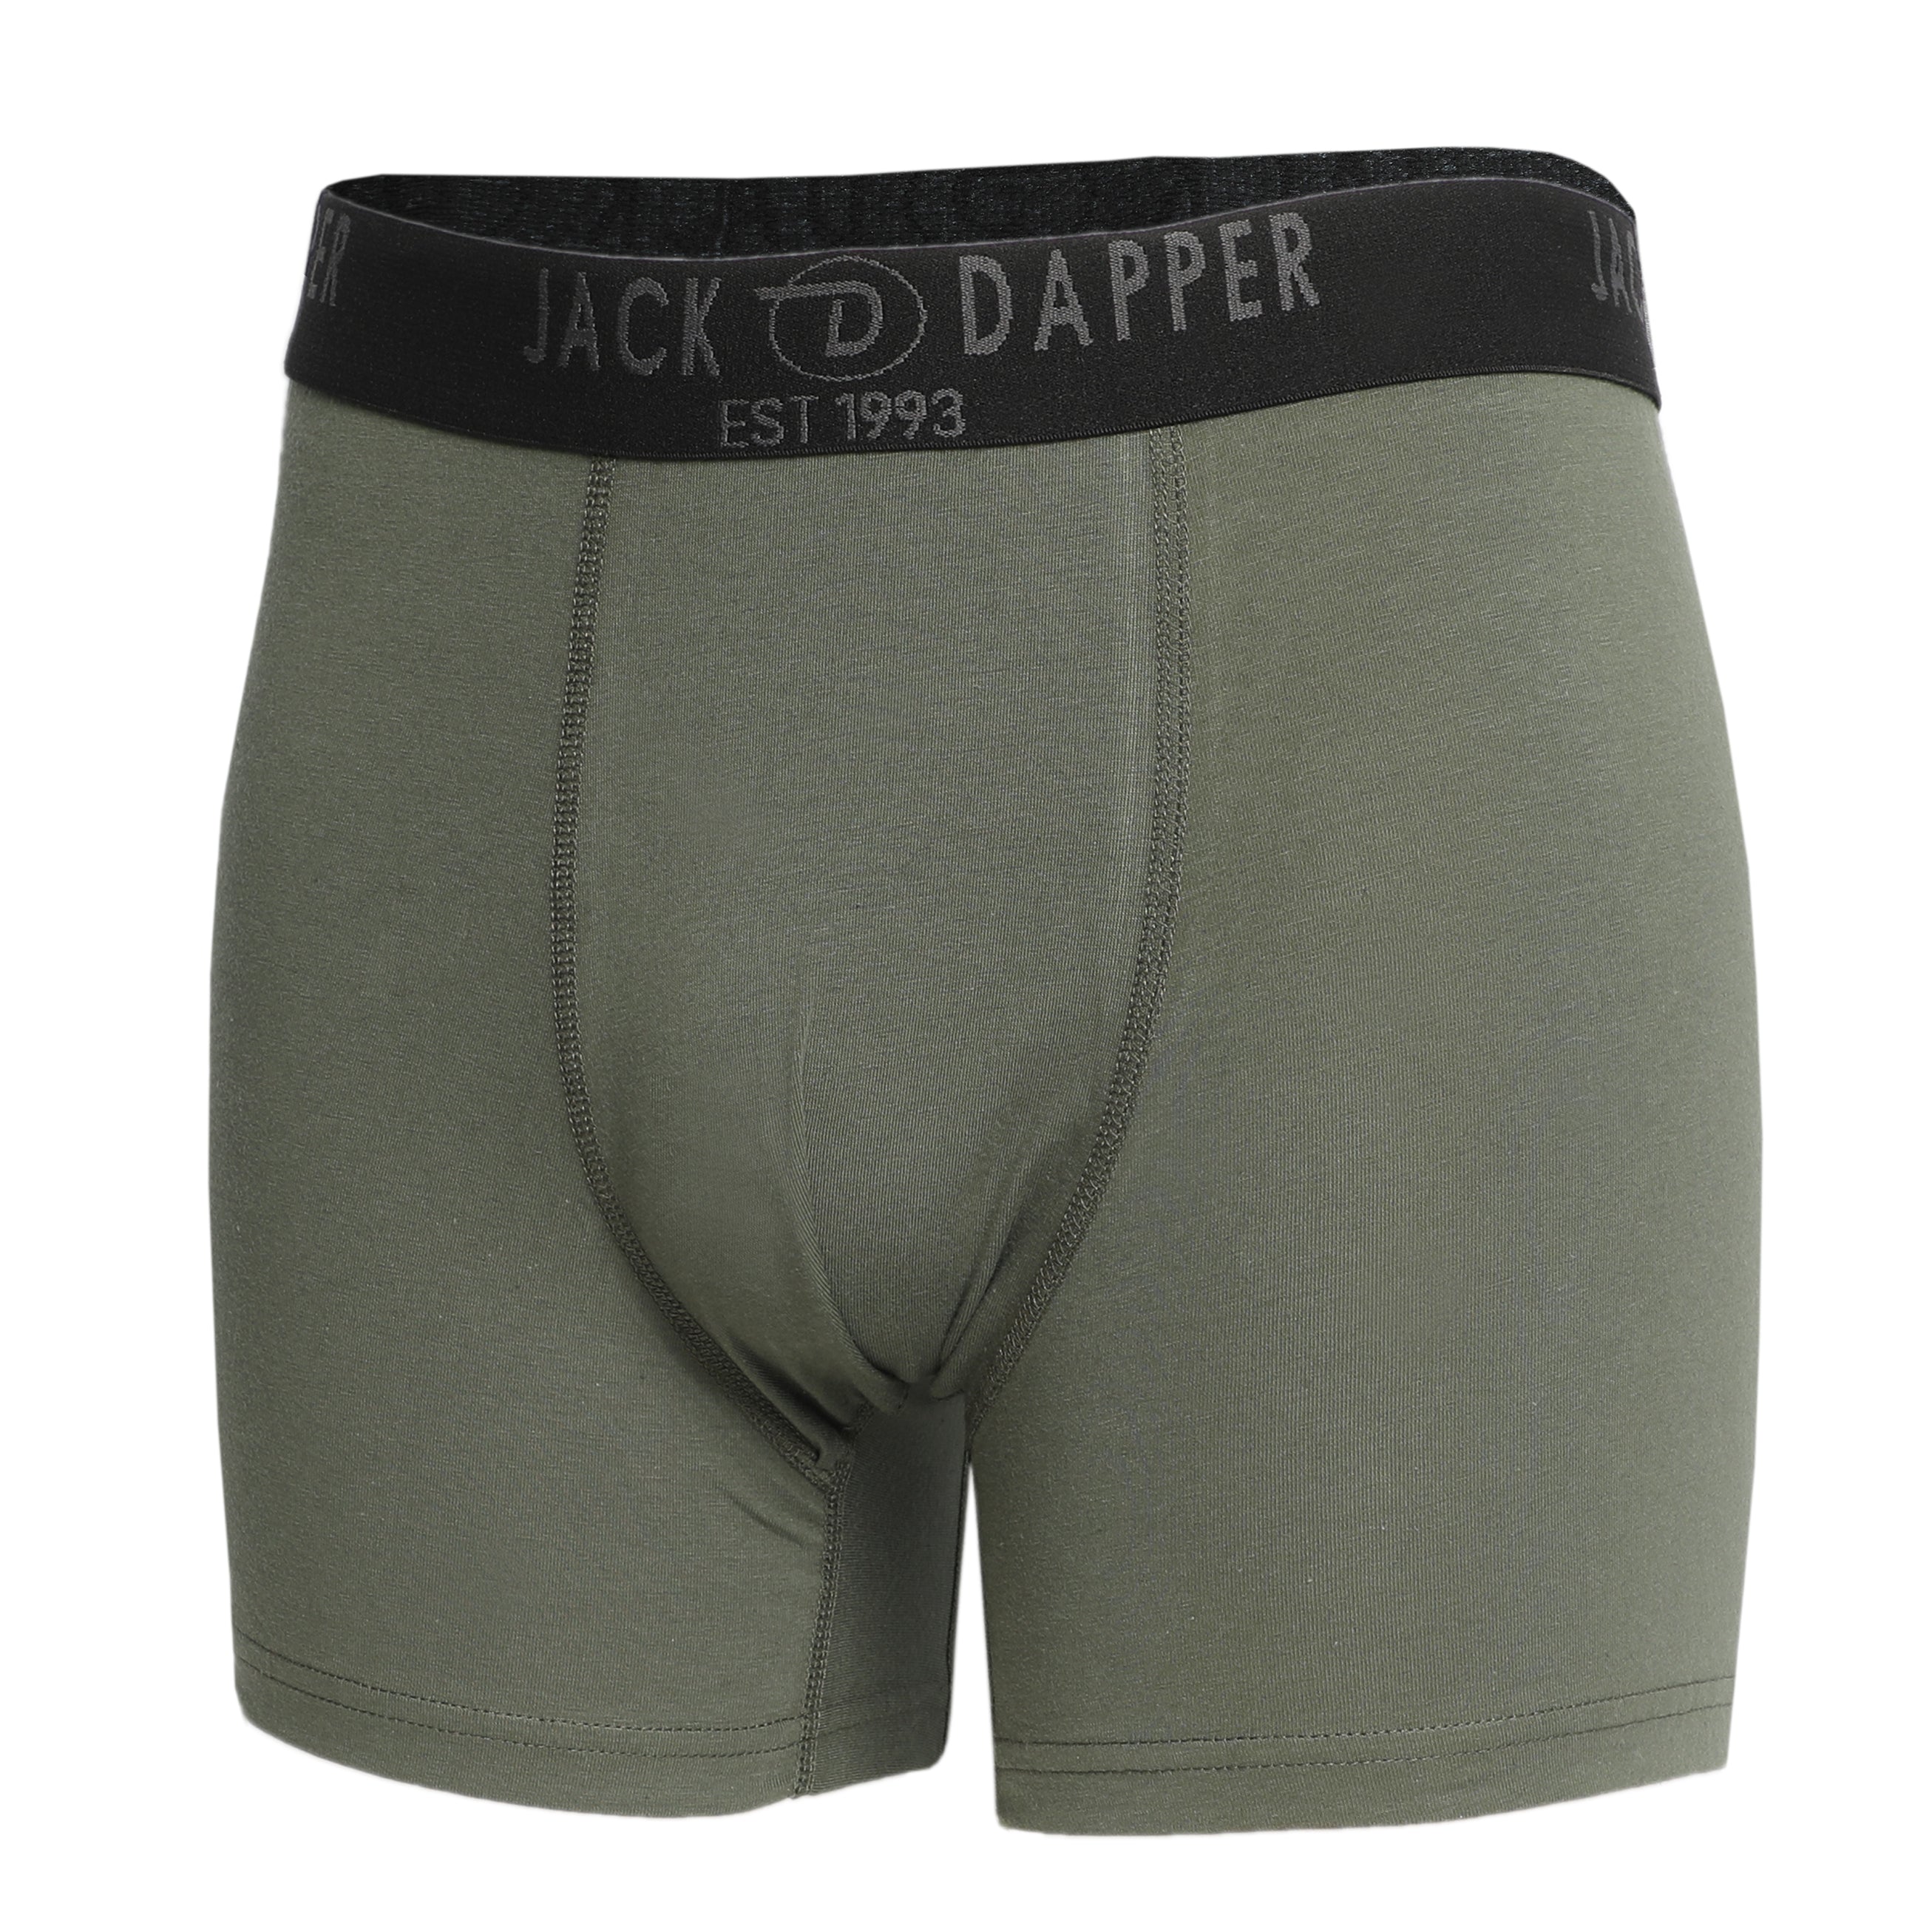 Jack Dapper Olive 2-Piece Cotton Underwear